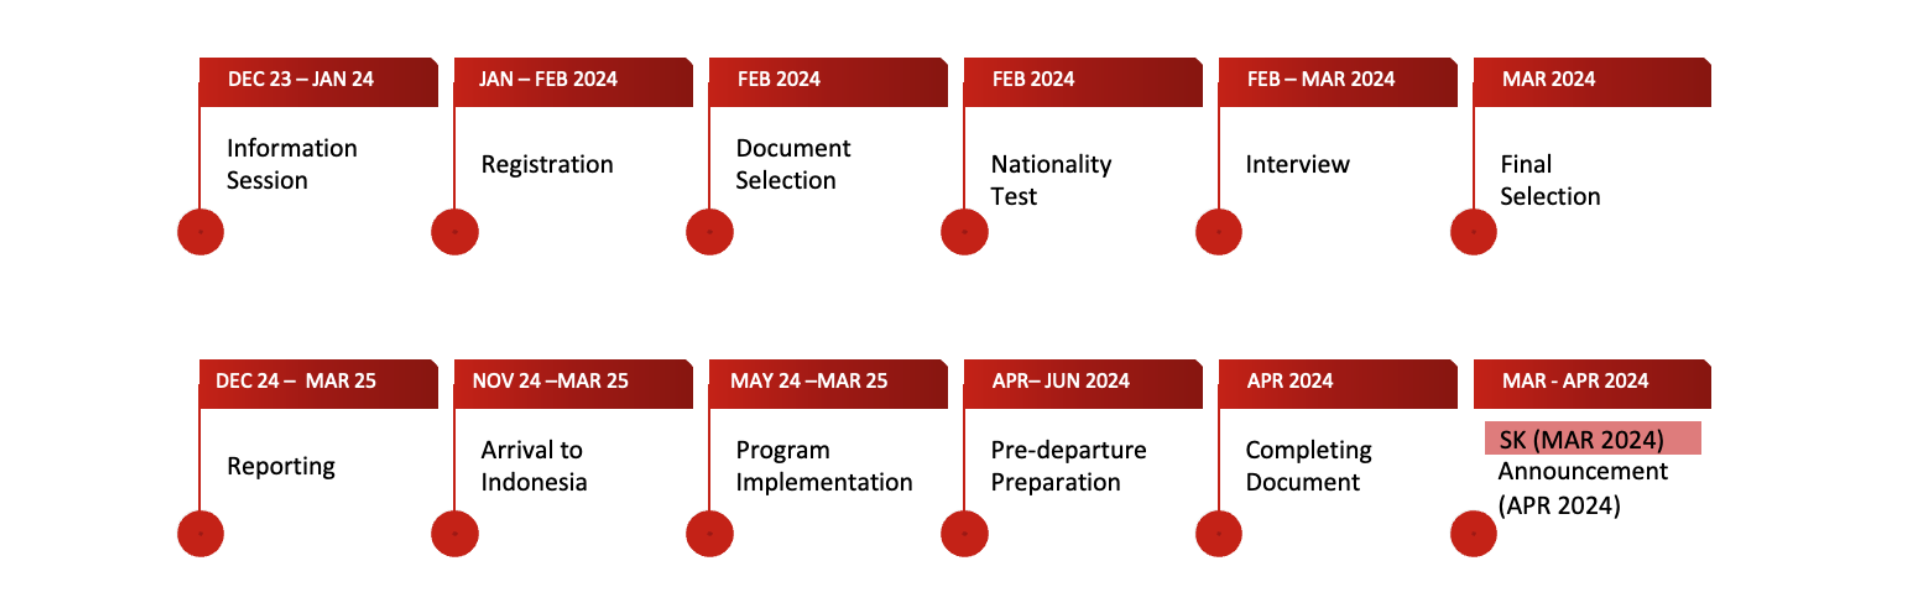 IISMA 2024 timeline